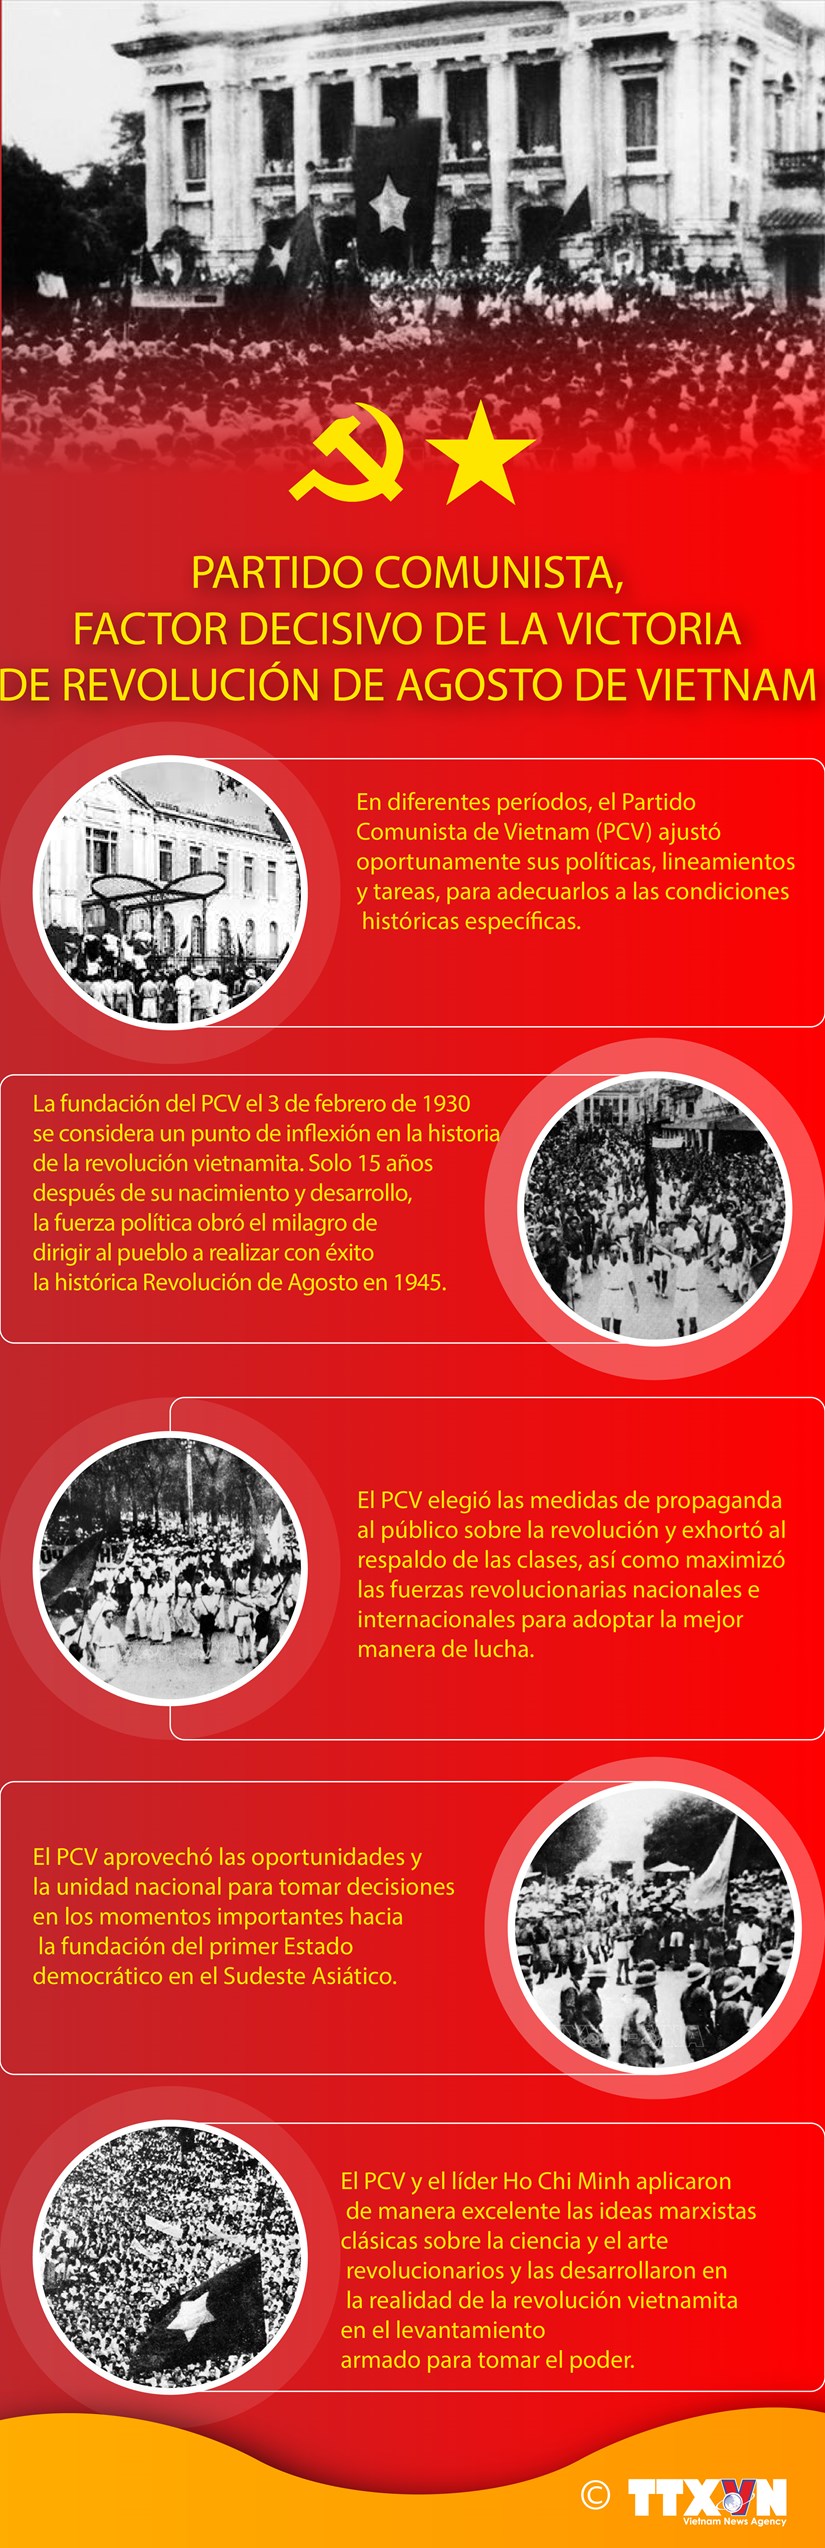 Partido Comunista, factor decisivo de la victoria de Revolucion de Agosto de Vietnam hinh anh 1